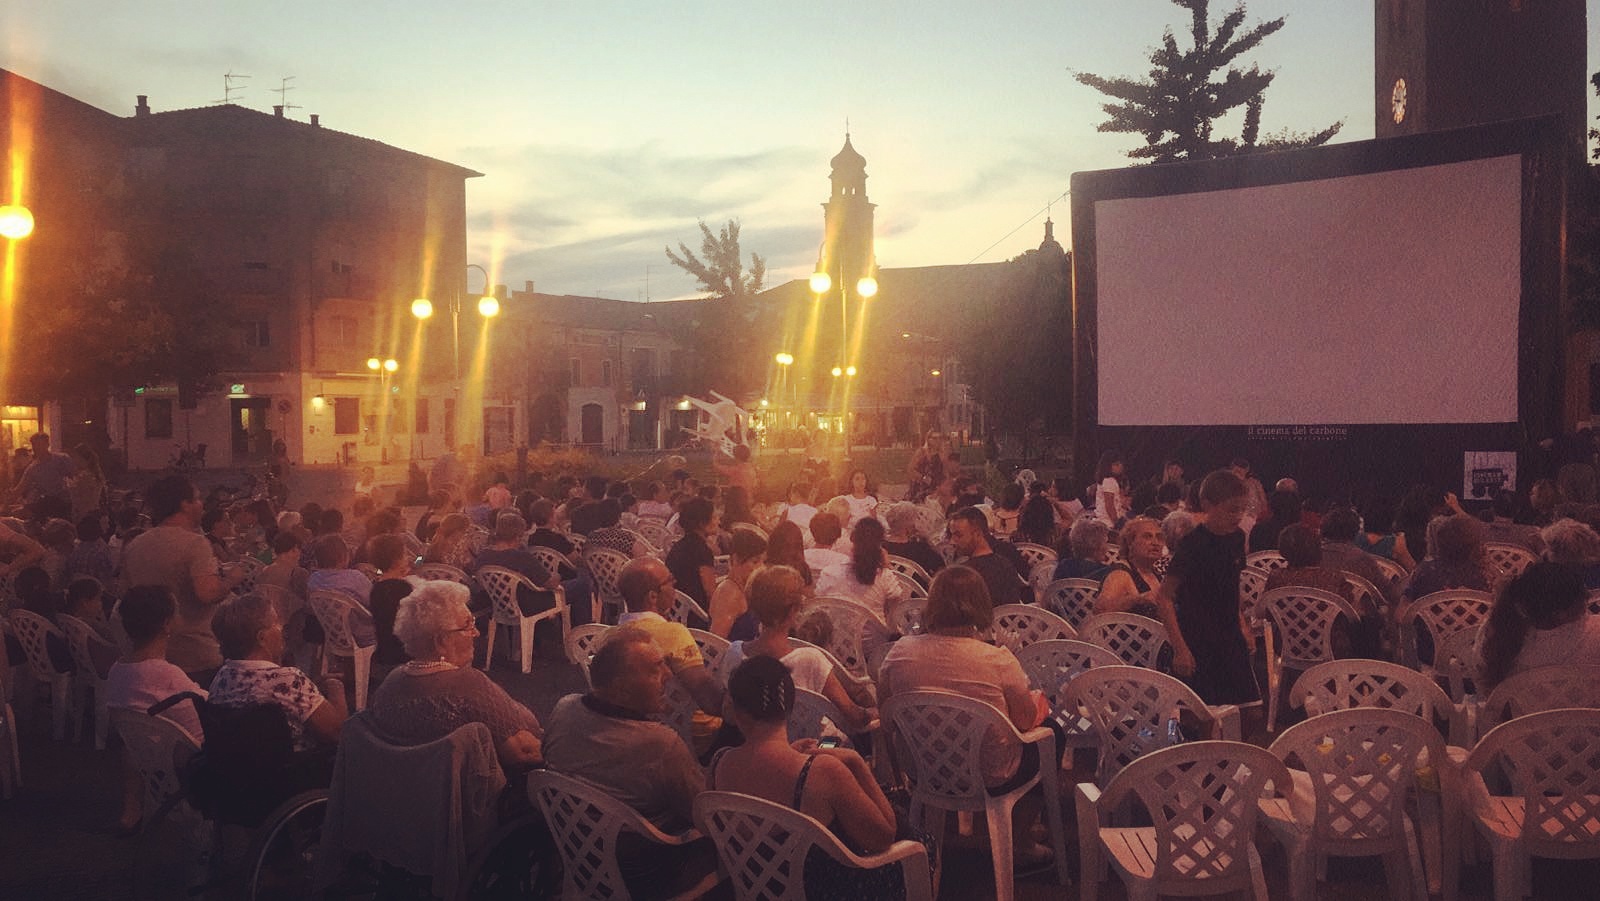 Il Cinema del Carbone di Mantova, dove si proiettano film e ci si proietta in laboratori, incontri, rassegne cinematografiche, concerti e visioni 